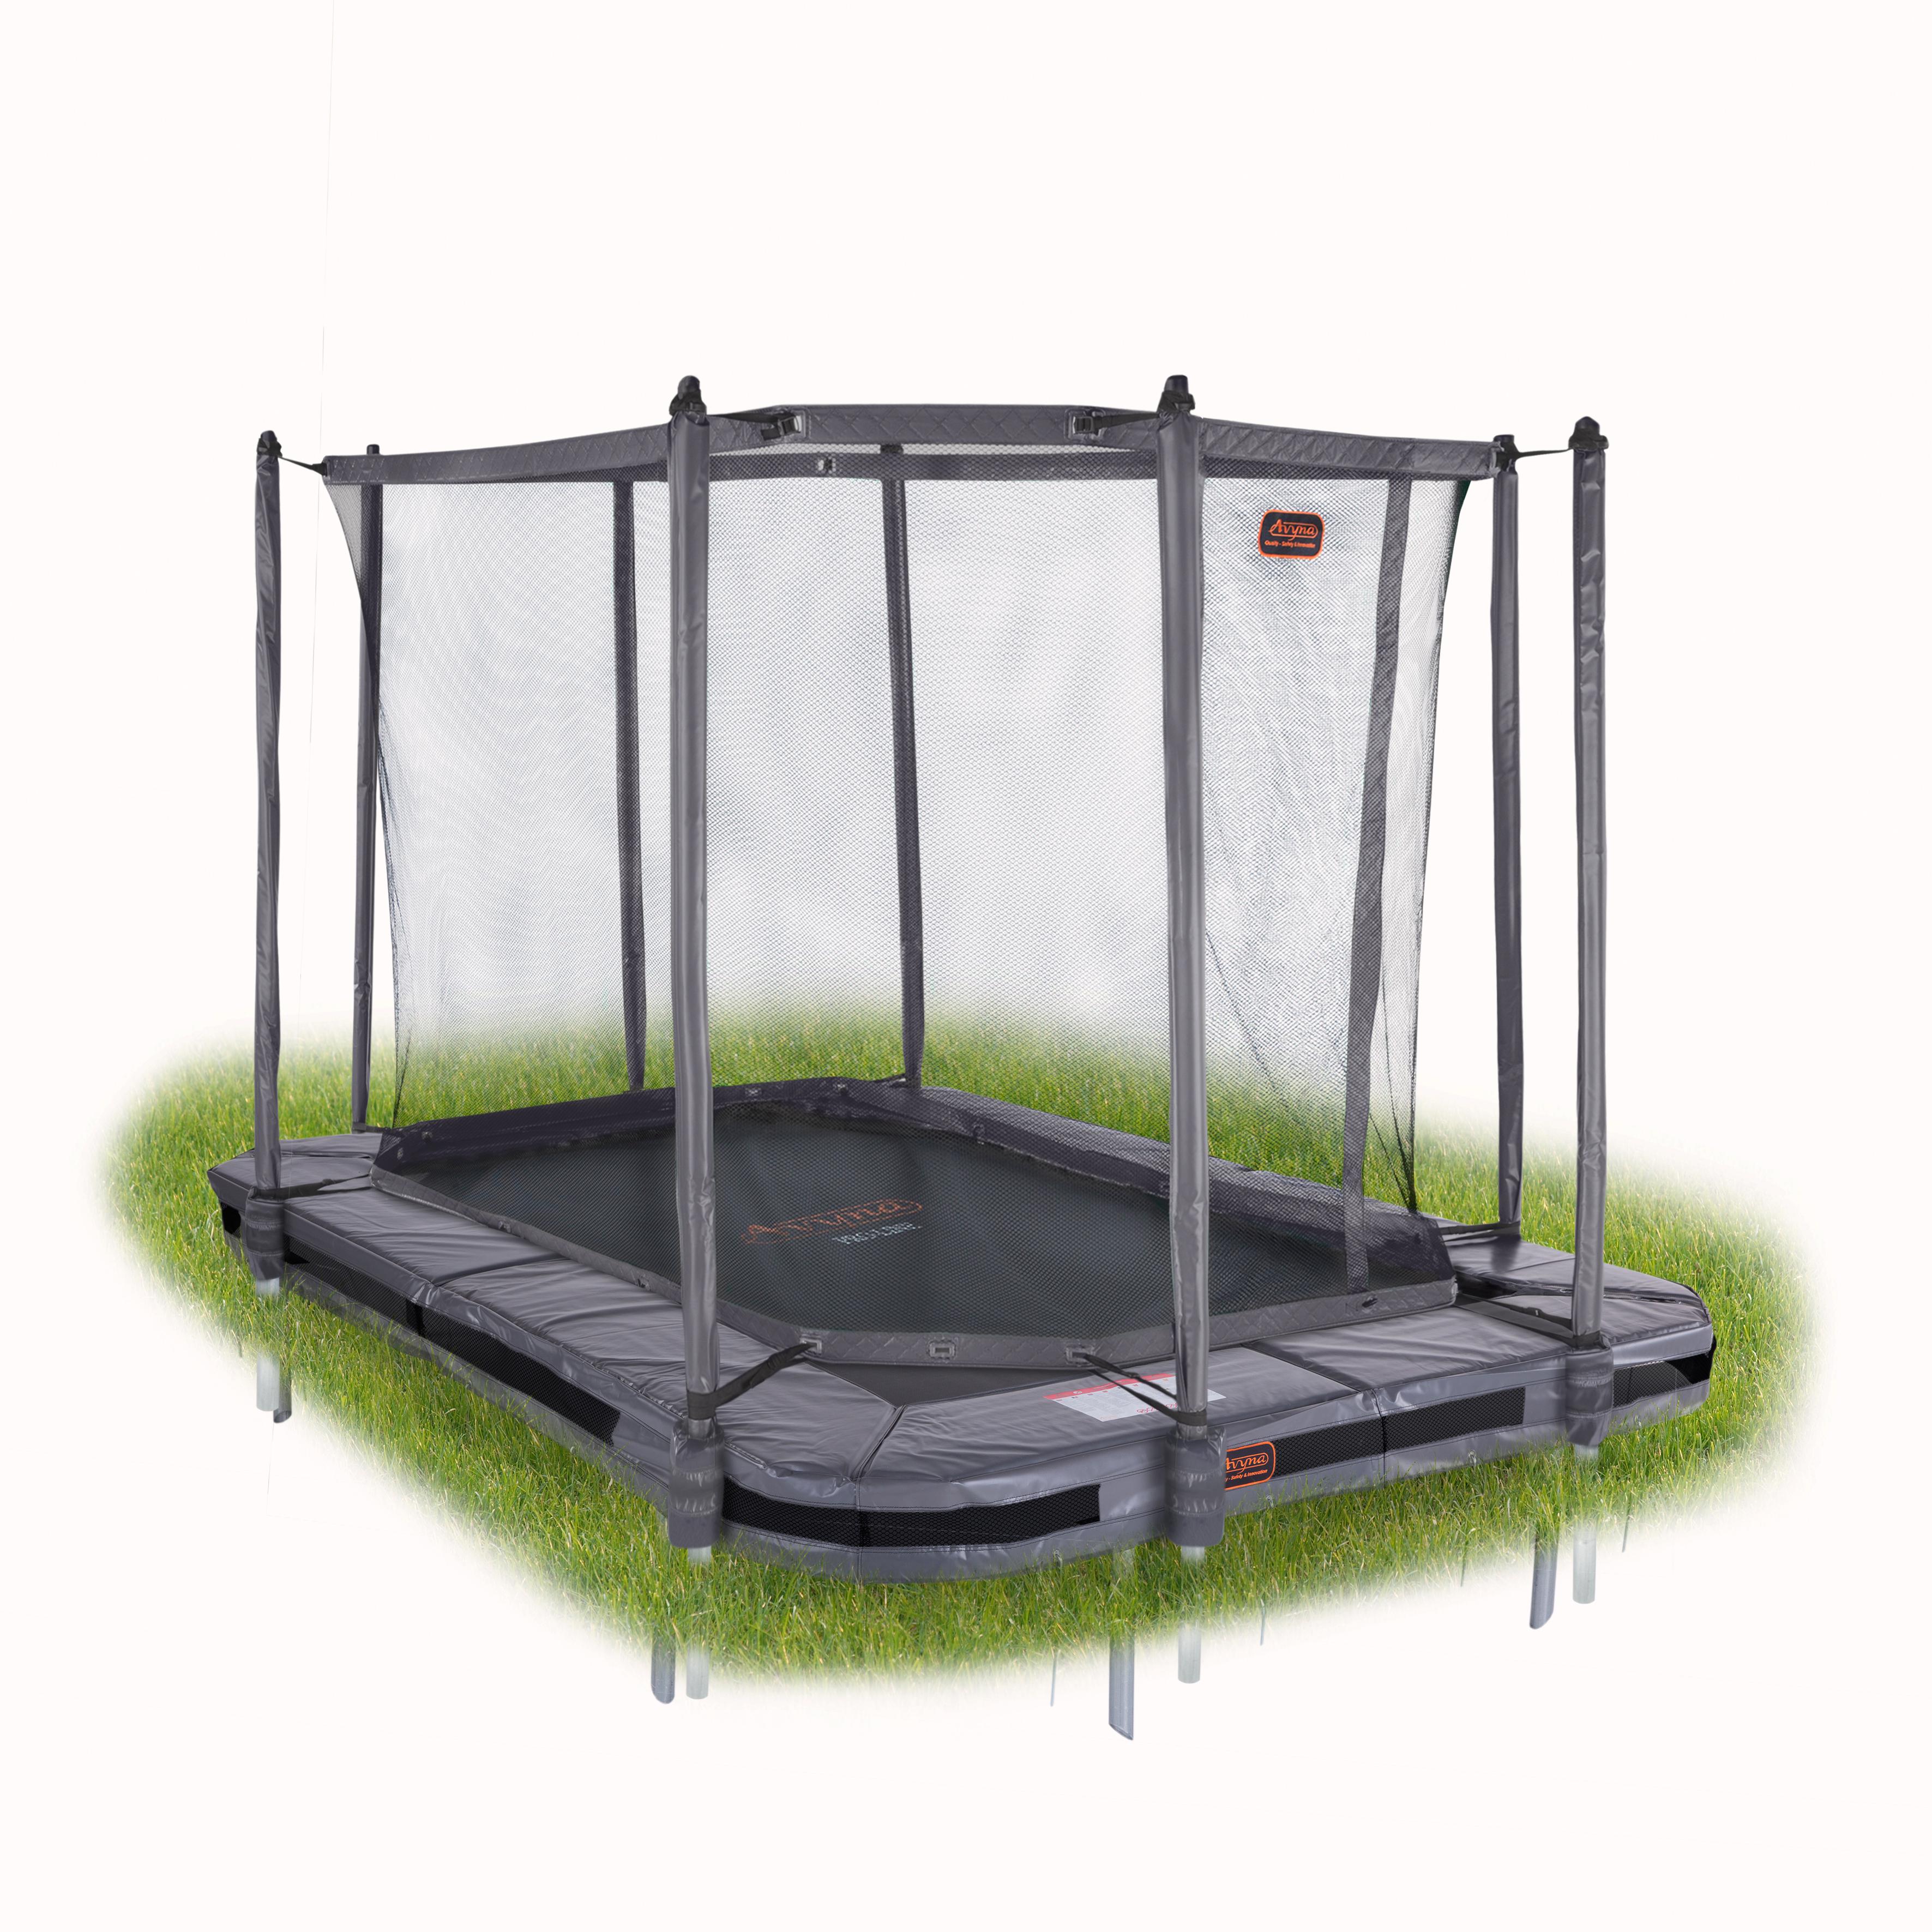 ijs verschil Archeoloog Rechthoekige inbouw trampolines met veiligheidsnet | Page 2 | Trampolines  kopen bij trampolineverkoop